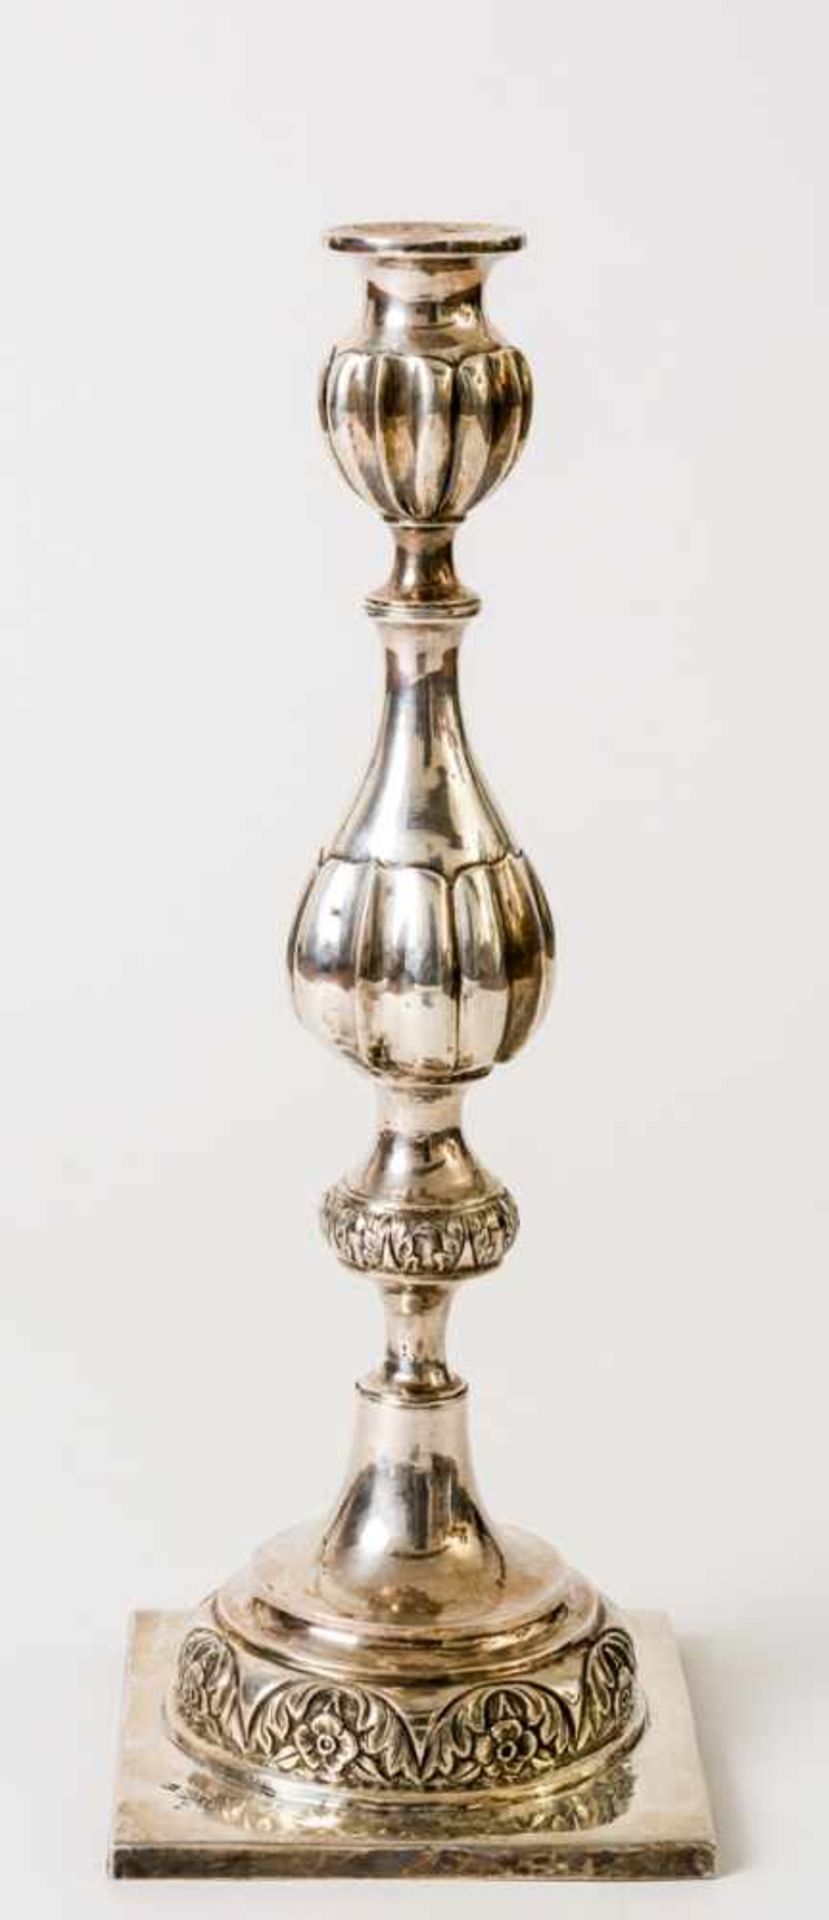 Kerzenleuchter Silber (420g), Minsk 1875 Beschaumeister: Matvye Sorokin Meister: "M.T." in